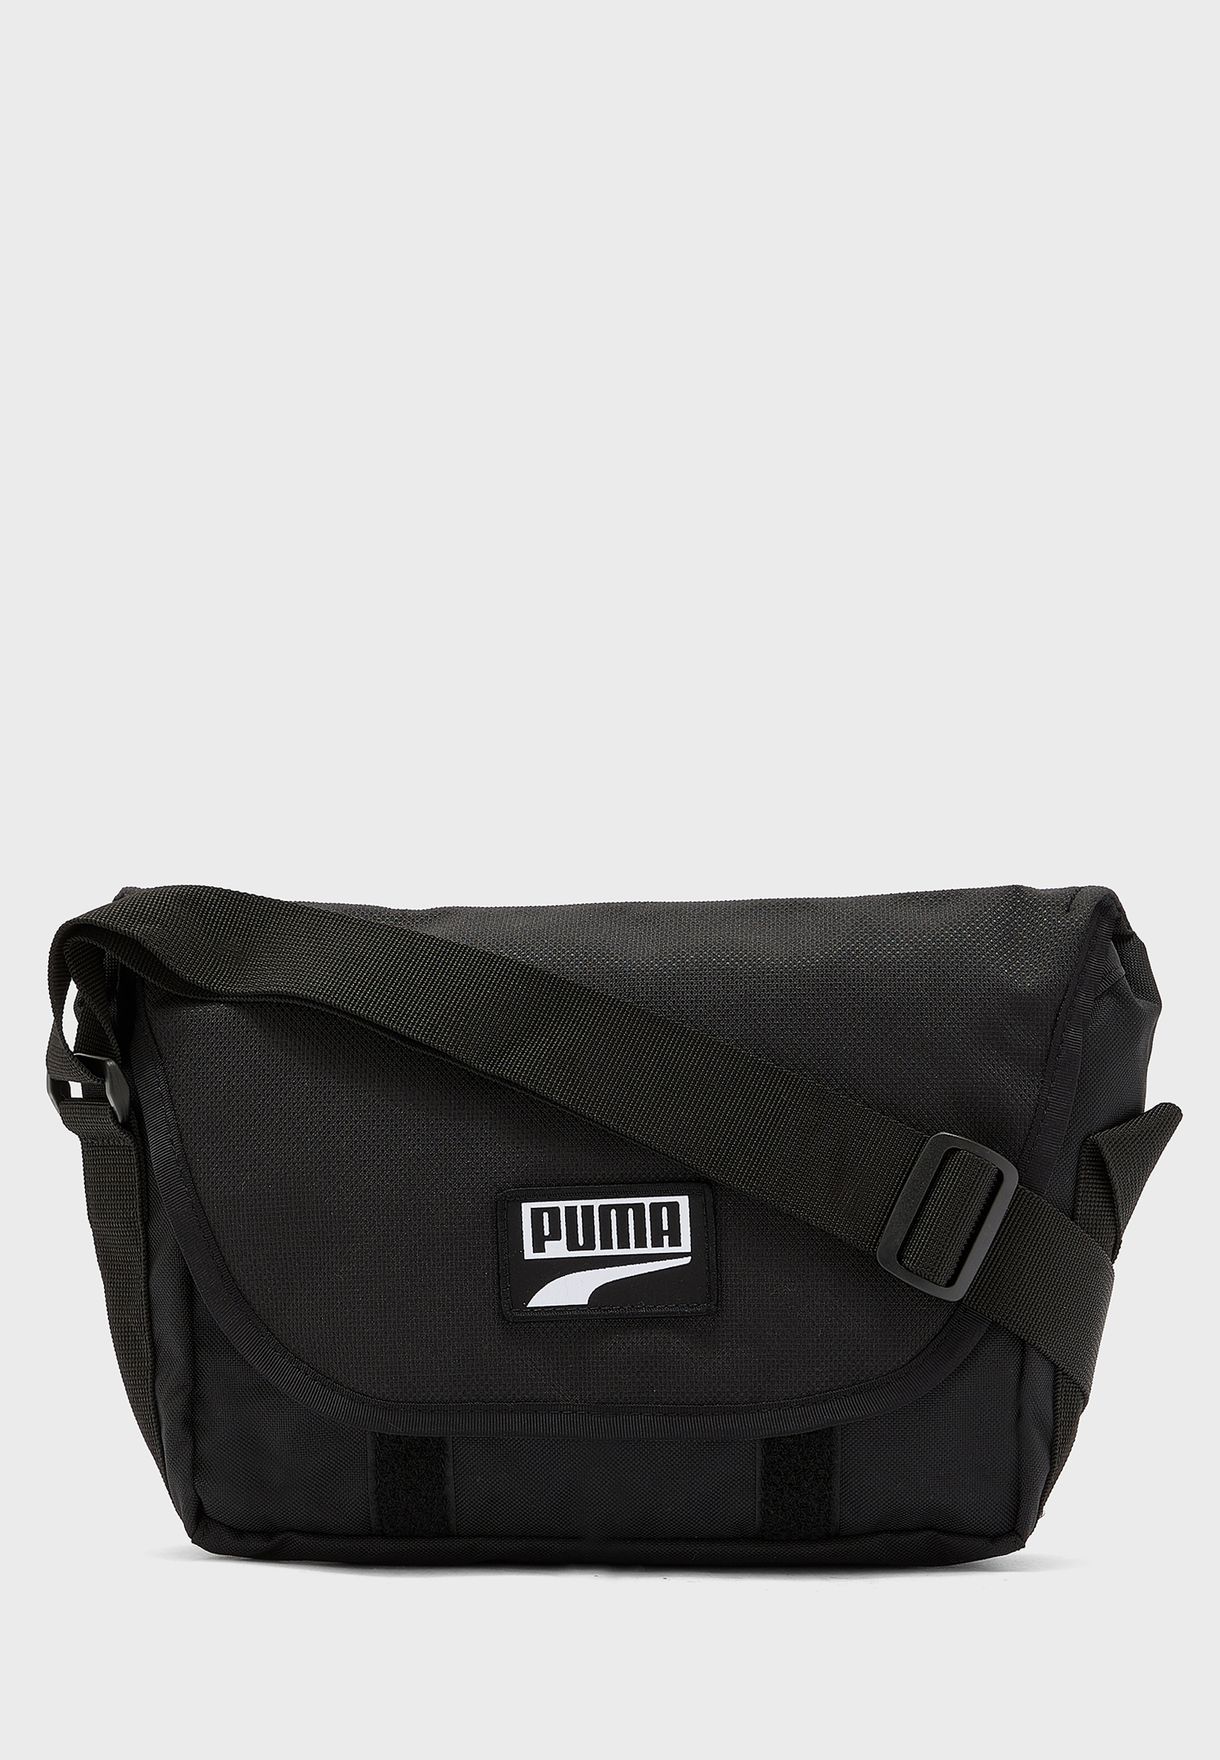 puma black messenger bag